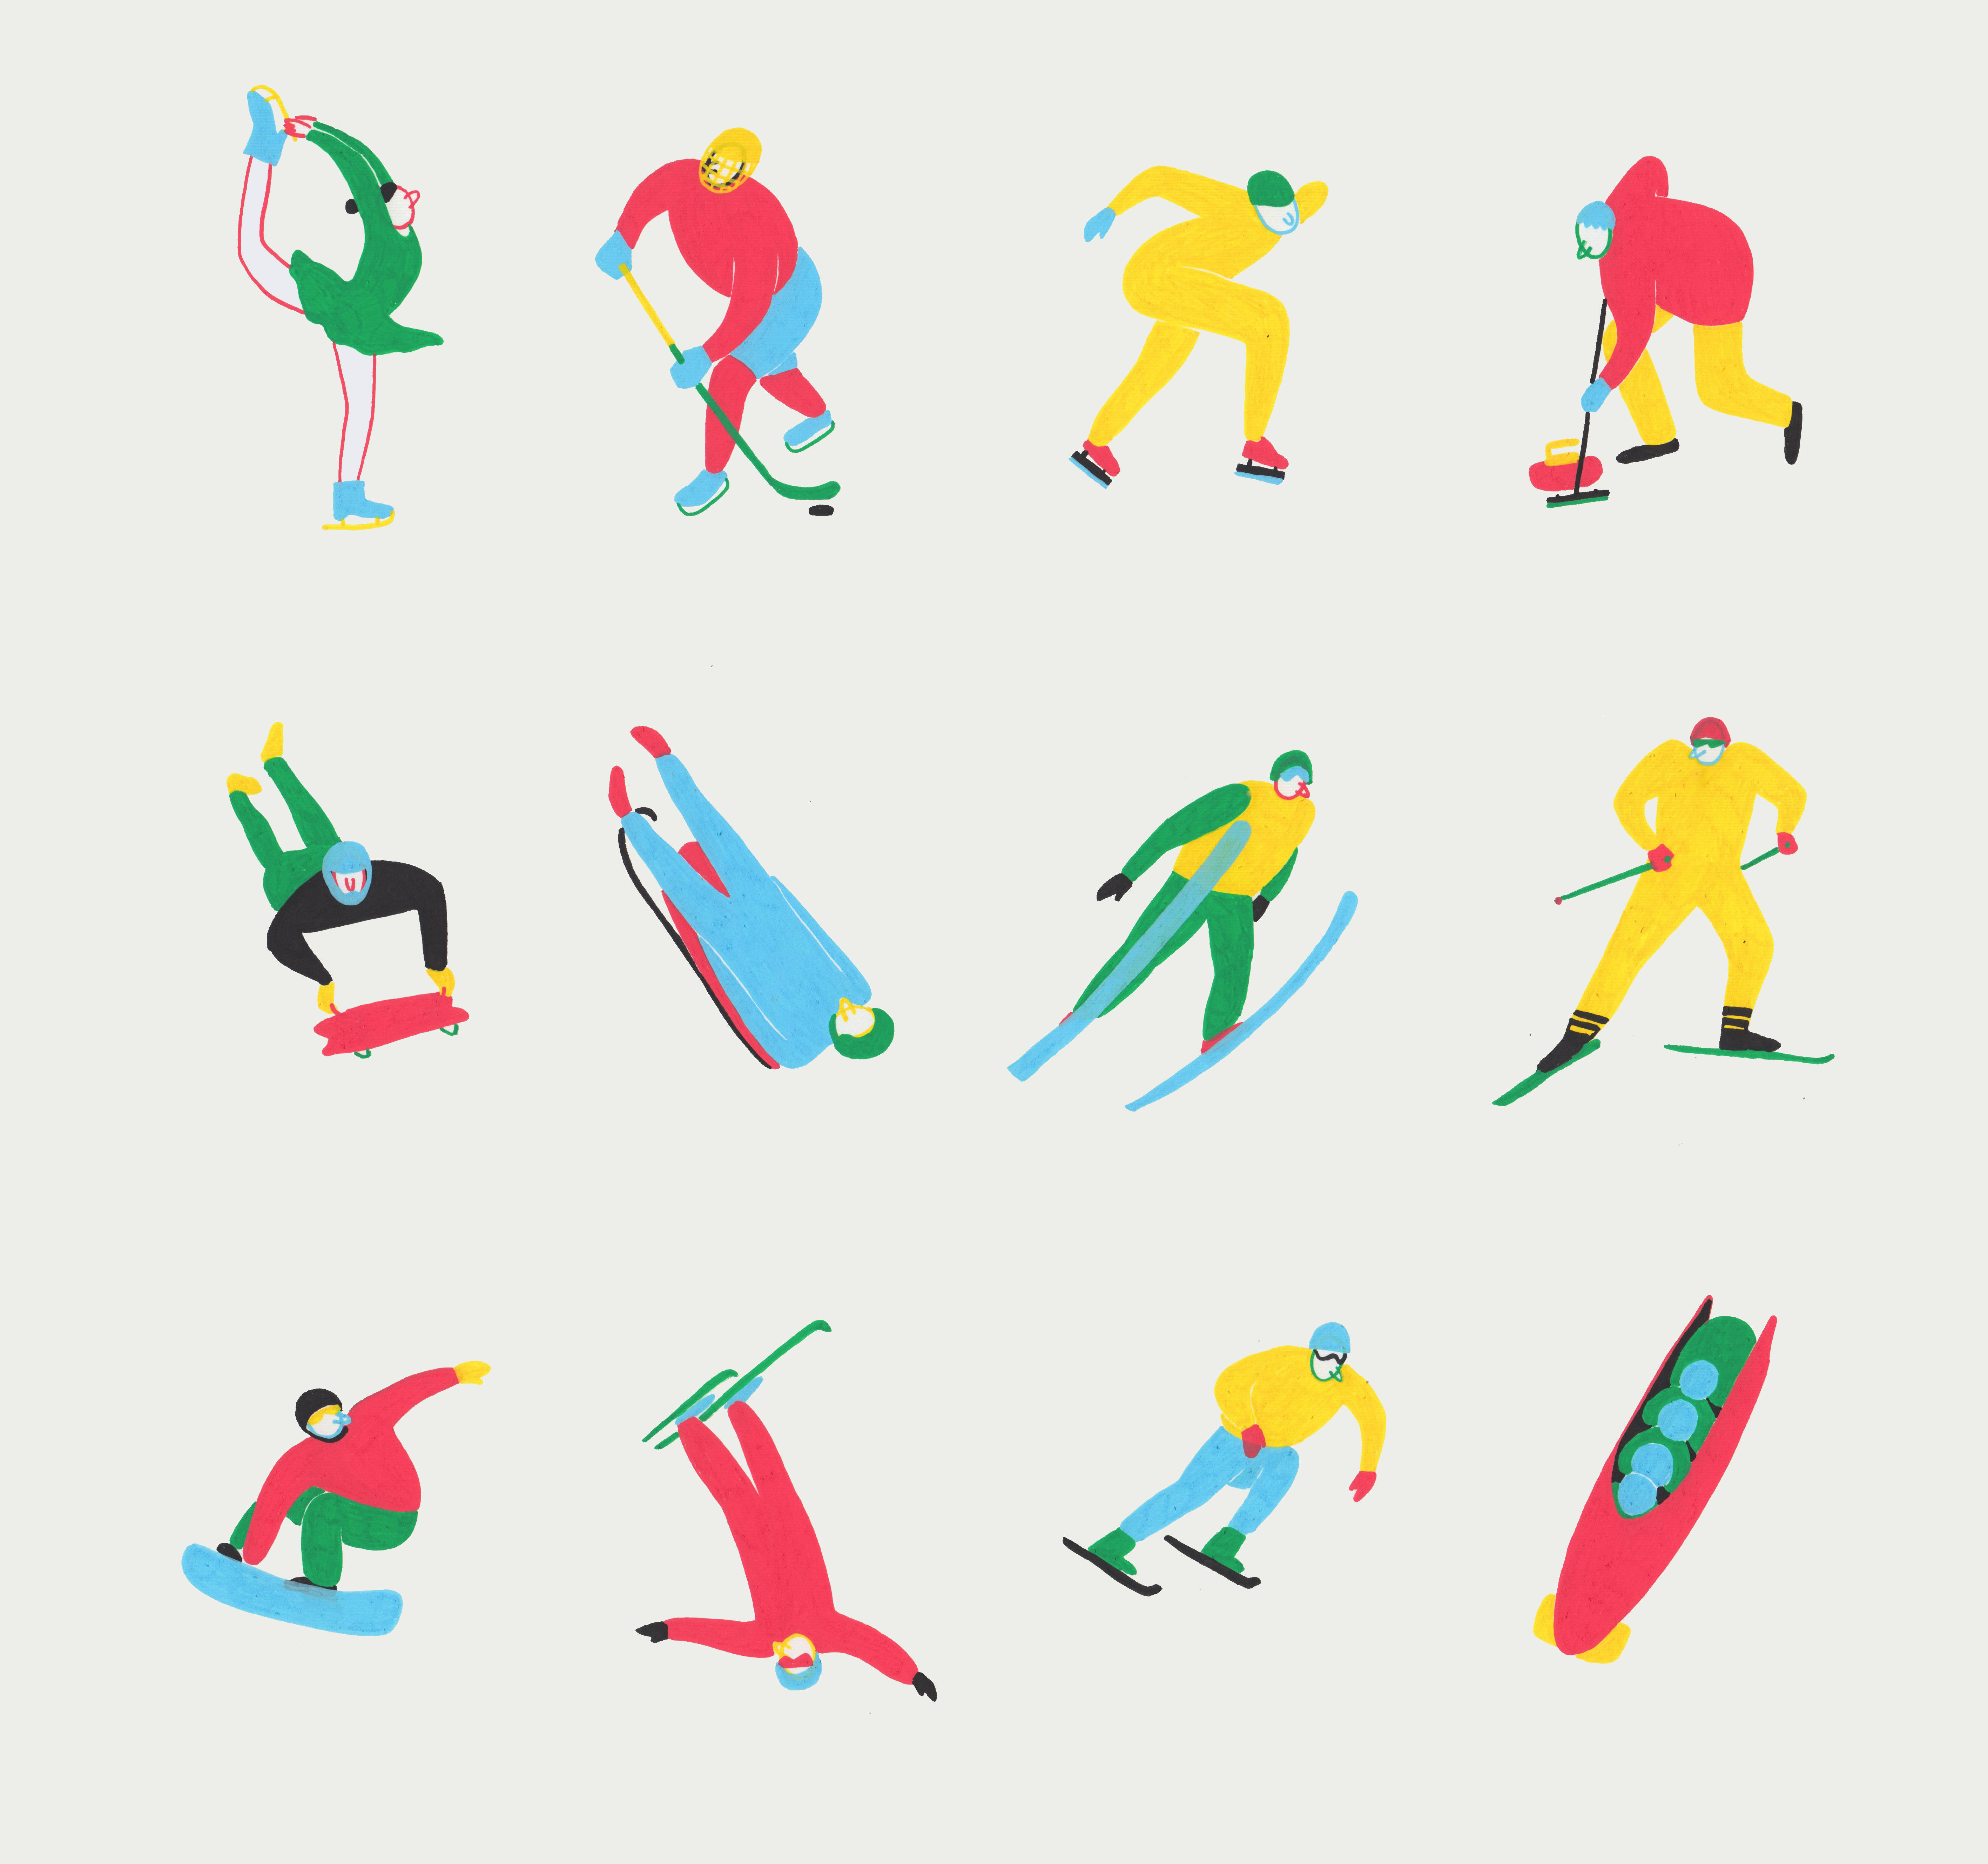 花样滑冰,冰球,冰壶,速度滑冰,跳台滑雪,单板滑雪等